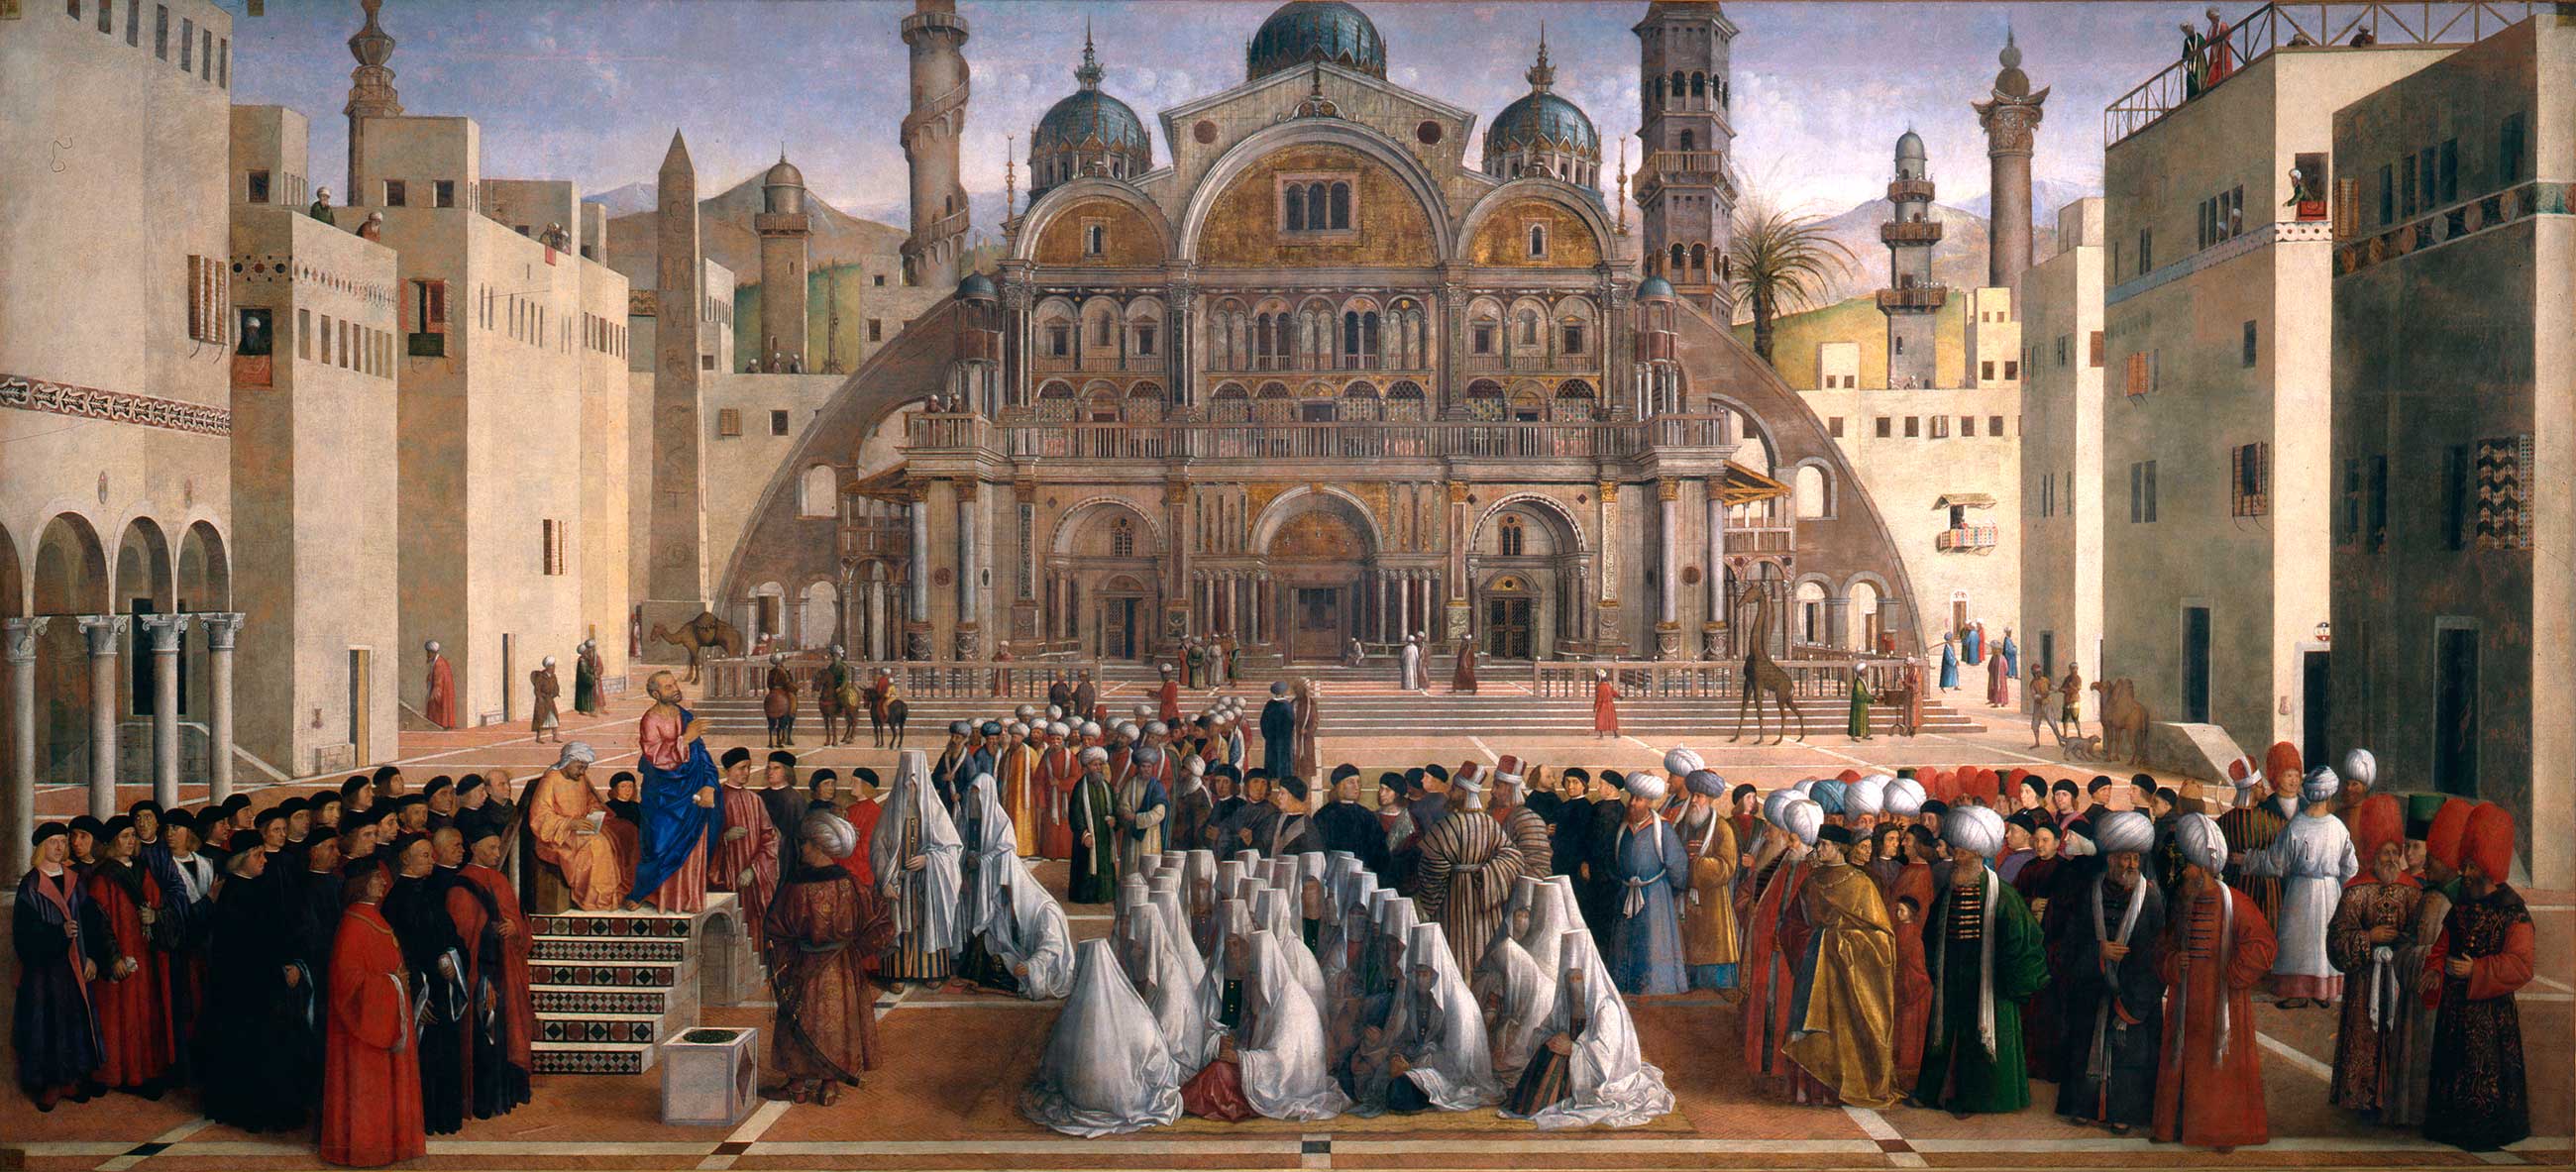 Gentile Bellini and Giovanni Bellini - 15th century - 16th century